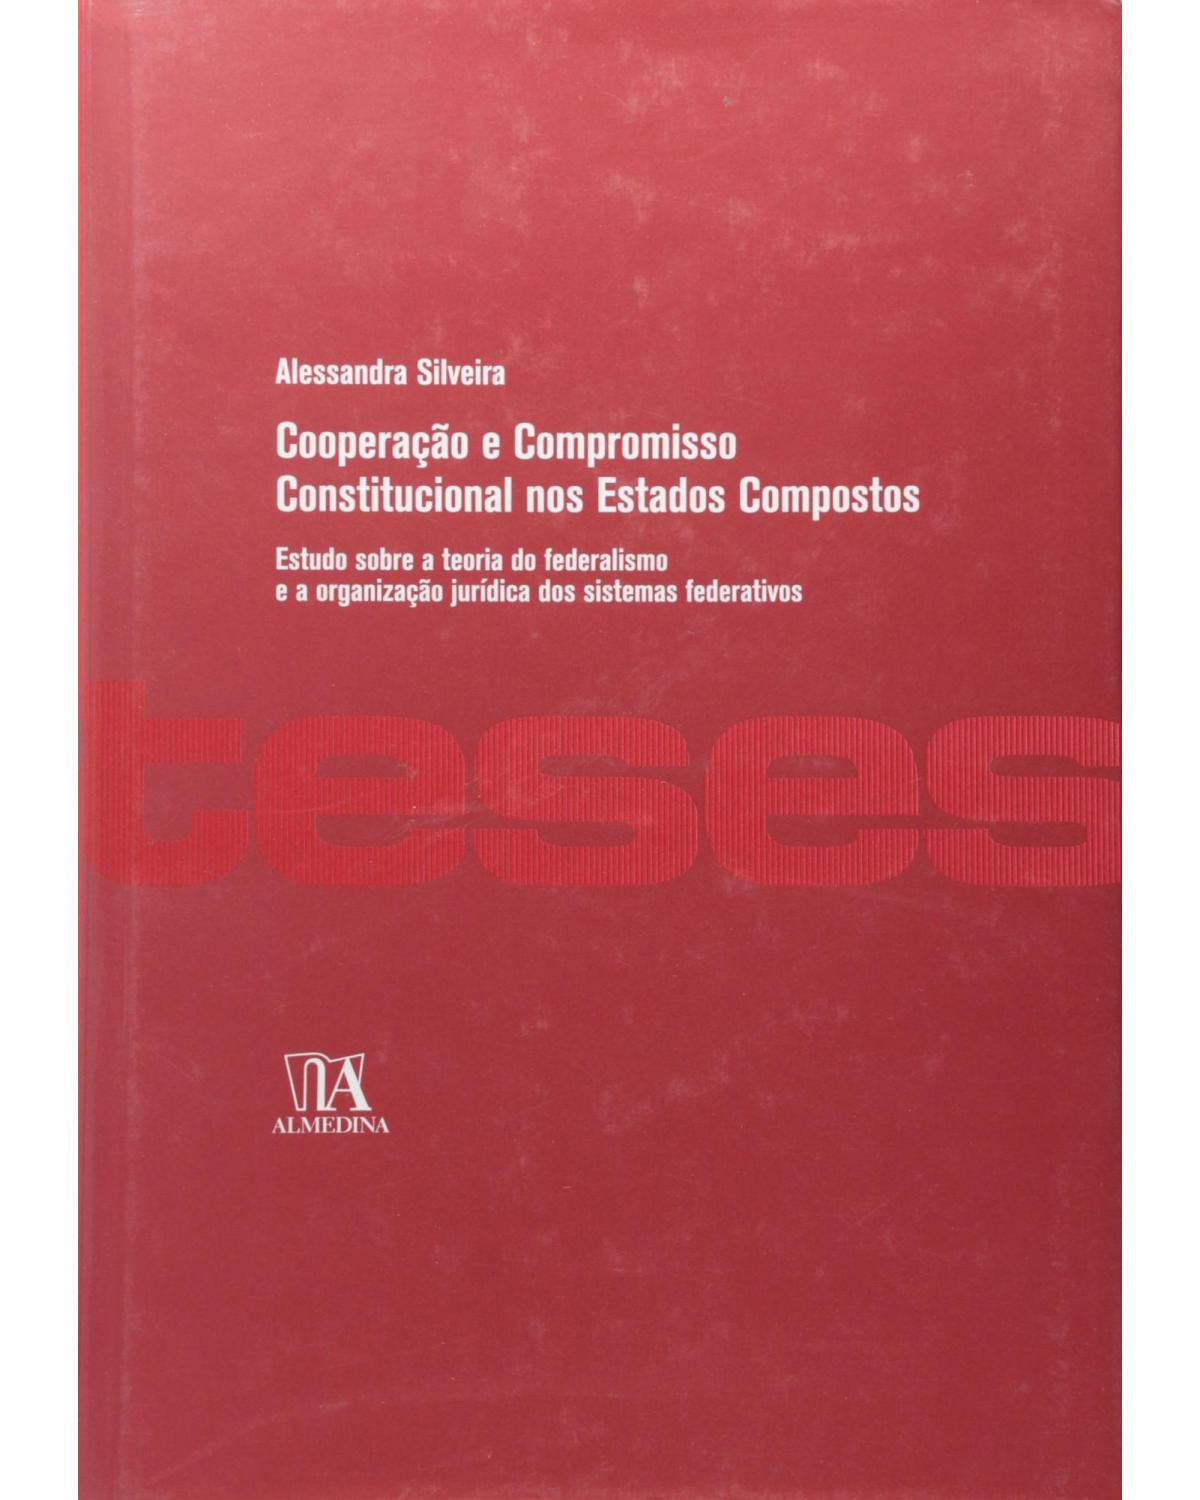 Cooperação e compromisso constitucional nos Estados compostos - estudo sobre a teoria do federalismo e a organização jurídica dos sistemas federativos - 1ª Edição | 2007